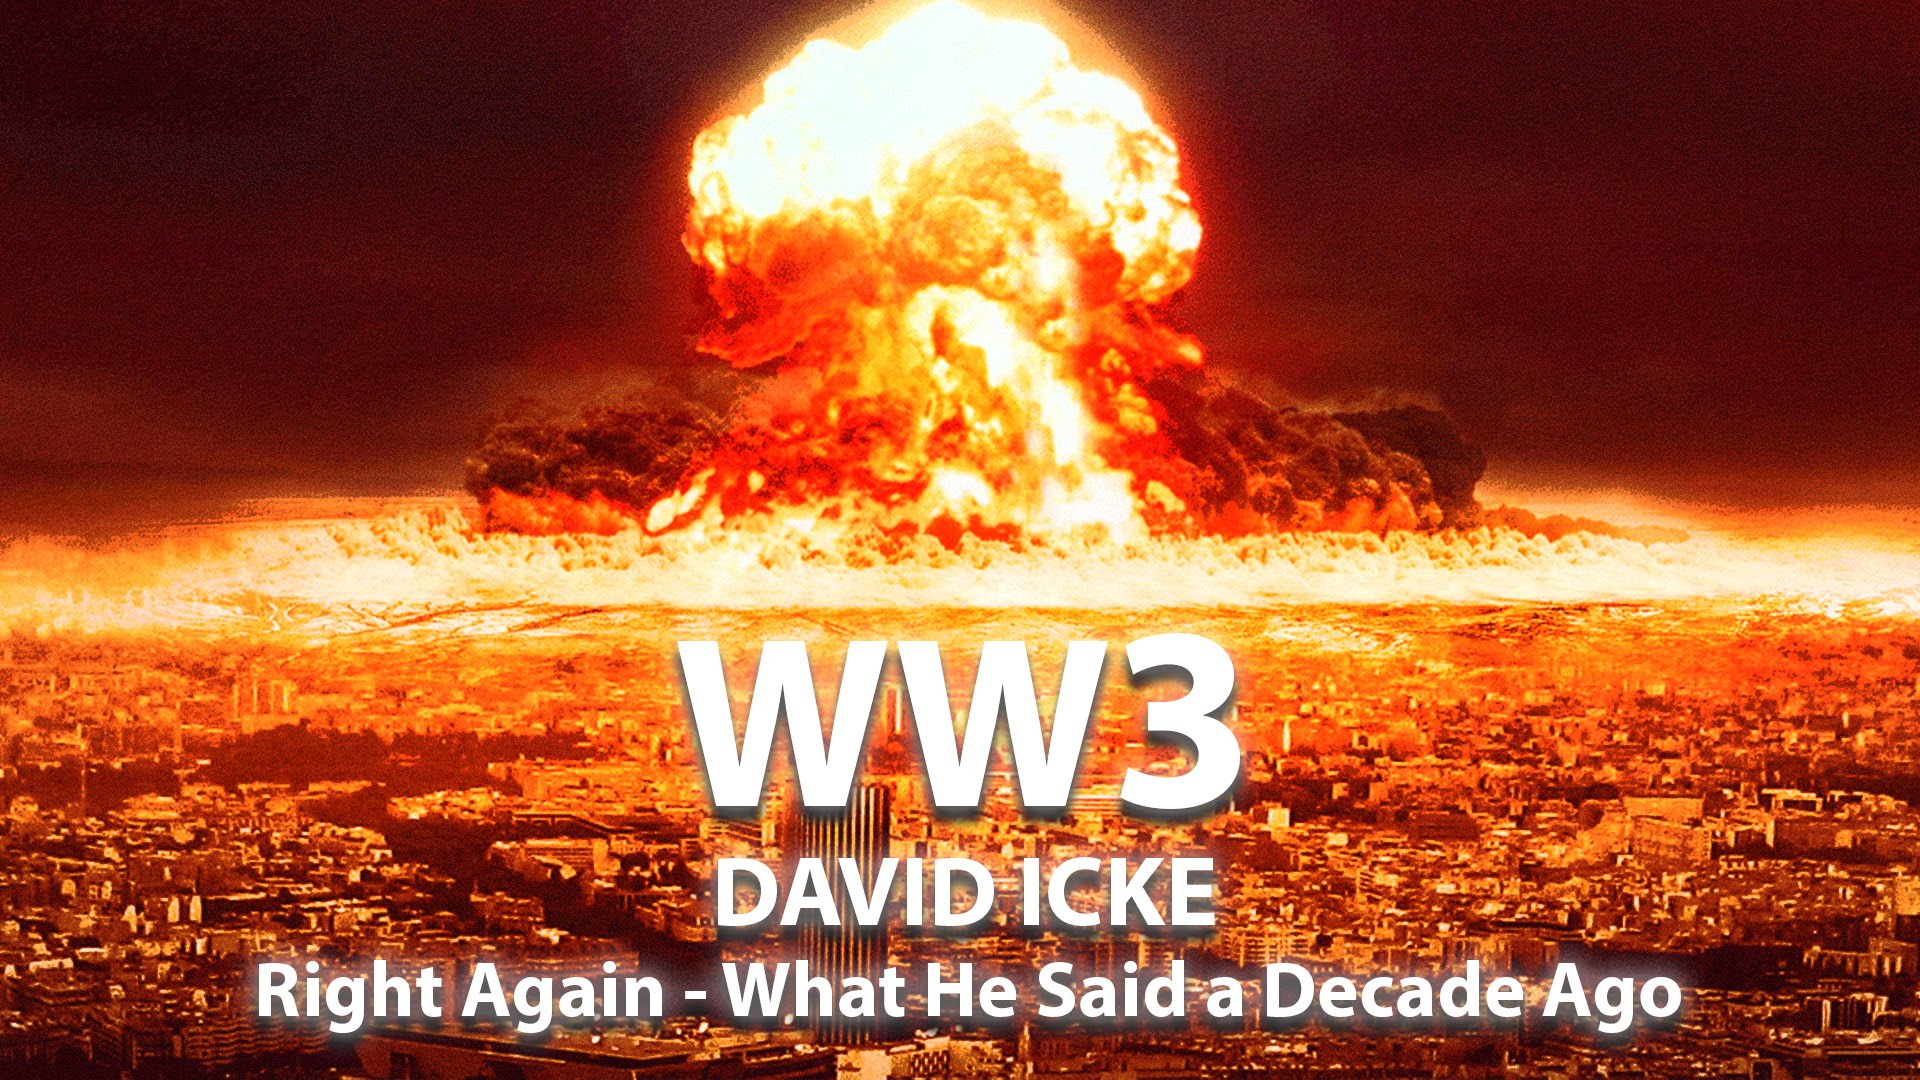 World War 3 – David Icke Right Again, What He Said a Decade Ago